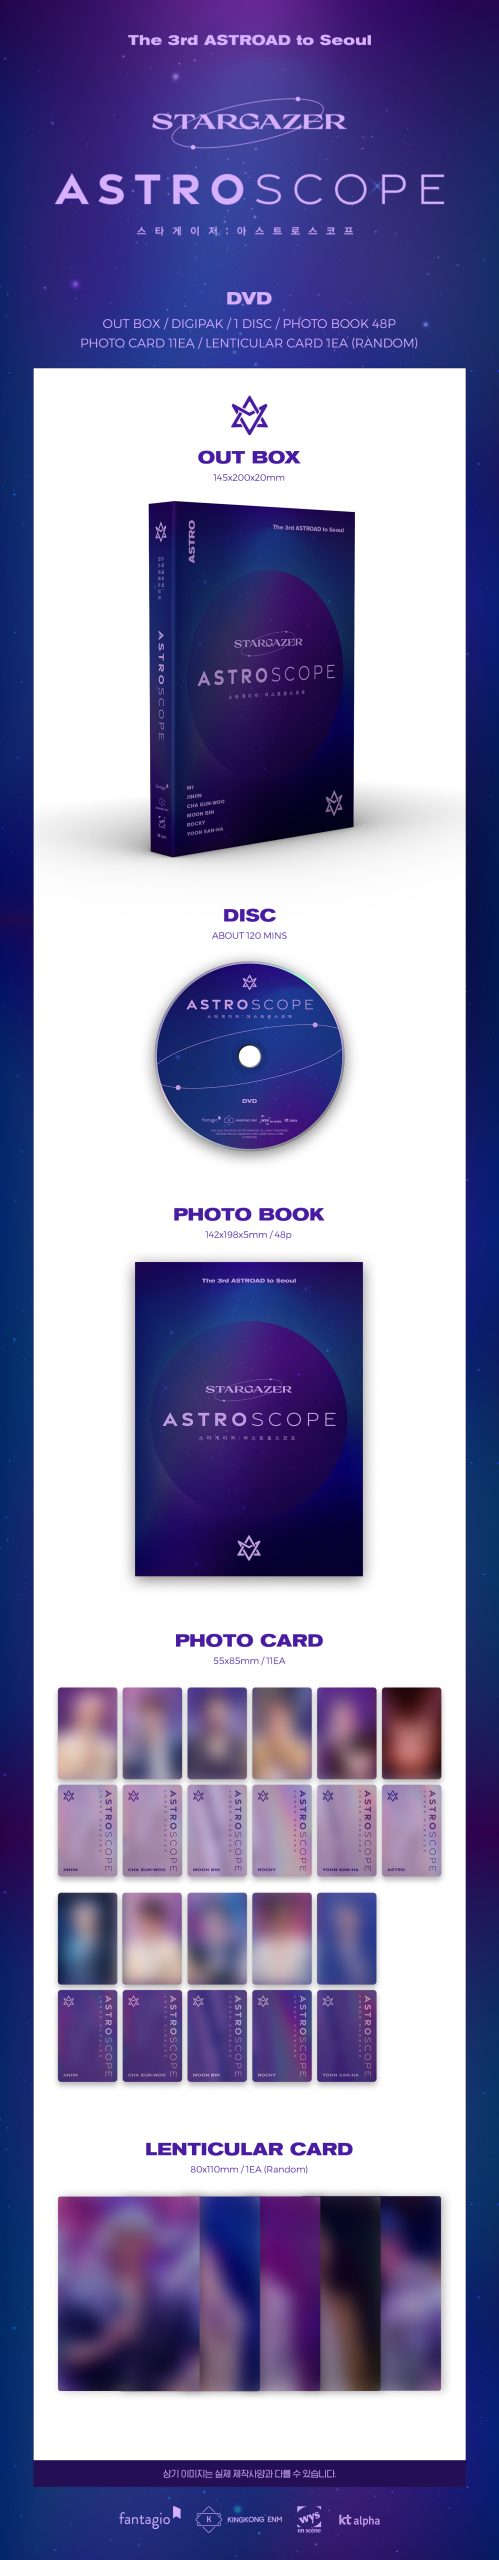 ☆大人気商品☆ ASTRO DVD ASTROSCOPE scope 日本語字幕